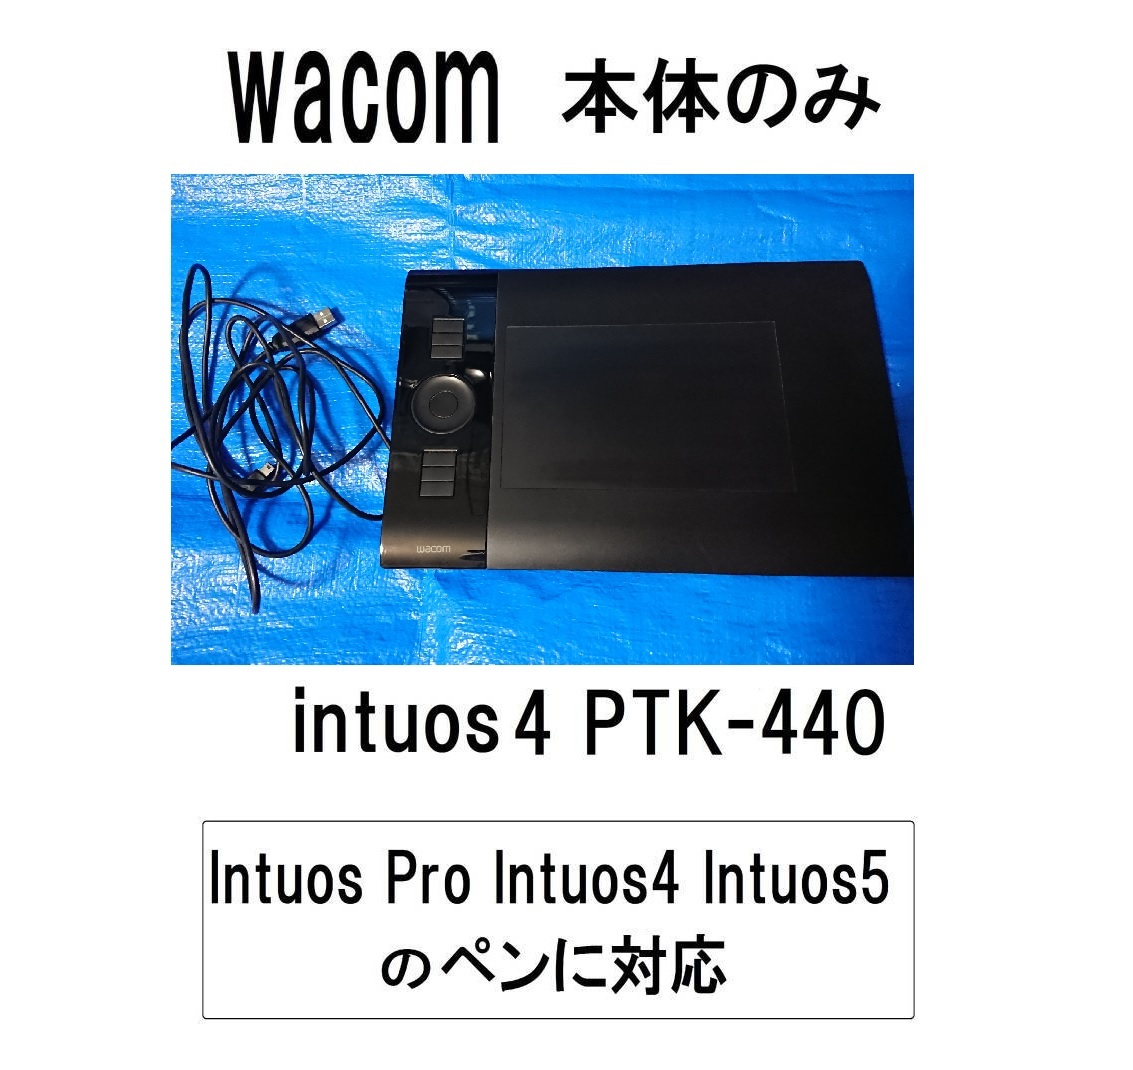 PTK-440インテュオスintuos4本体ボード板のみイントゥオスUSB接続intosインチュオスintuos5/intuos4/intuosproペンpro対応intos4プロintos5_画像1